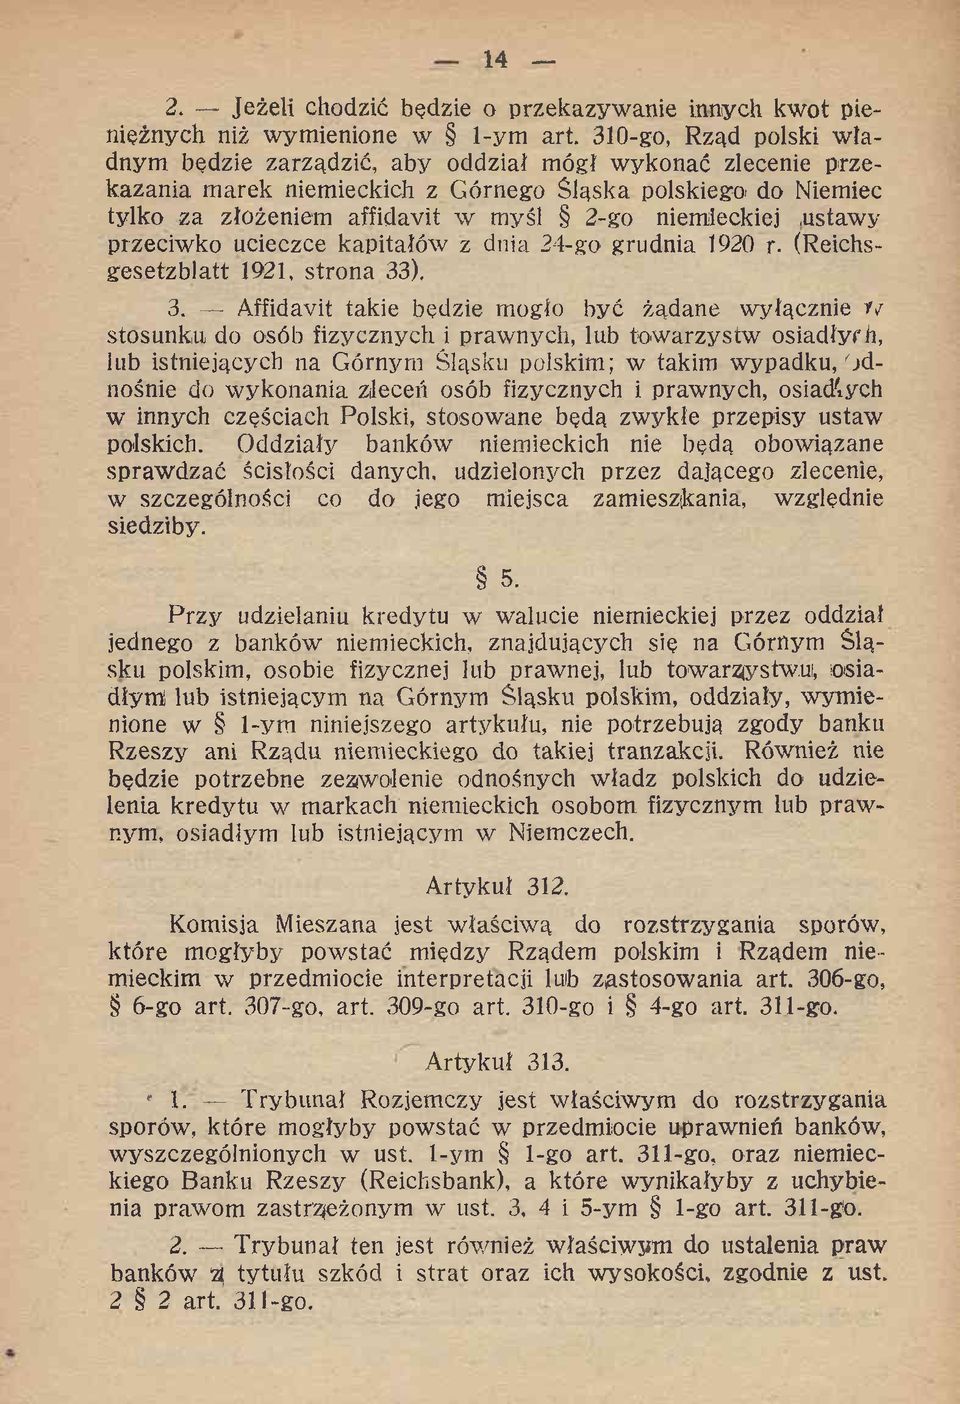 niemieckiej ustawy przeciwko ucieczce kapitałów z dnia 24-go grudnia 1920 r. (Reichsgesetzblatt 1921, strona 33